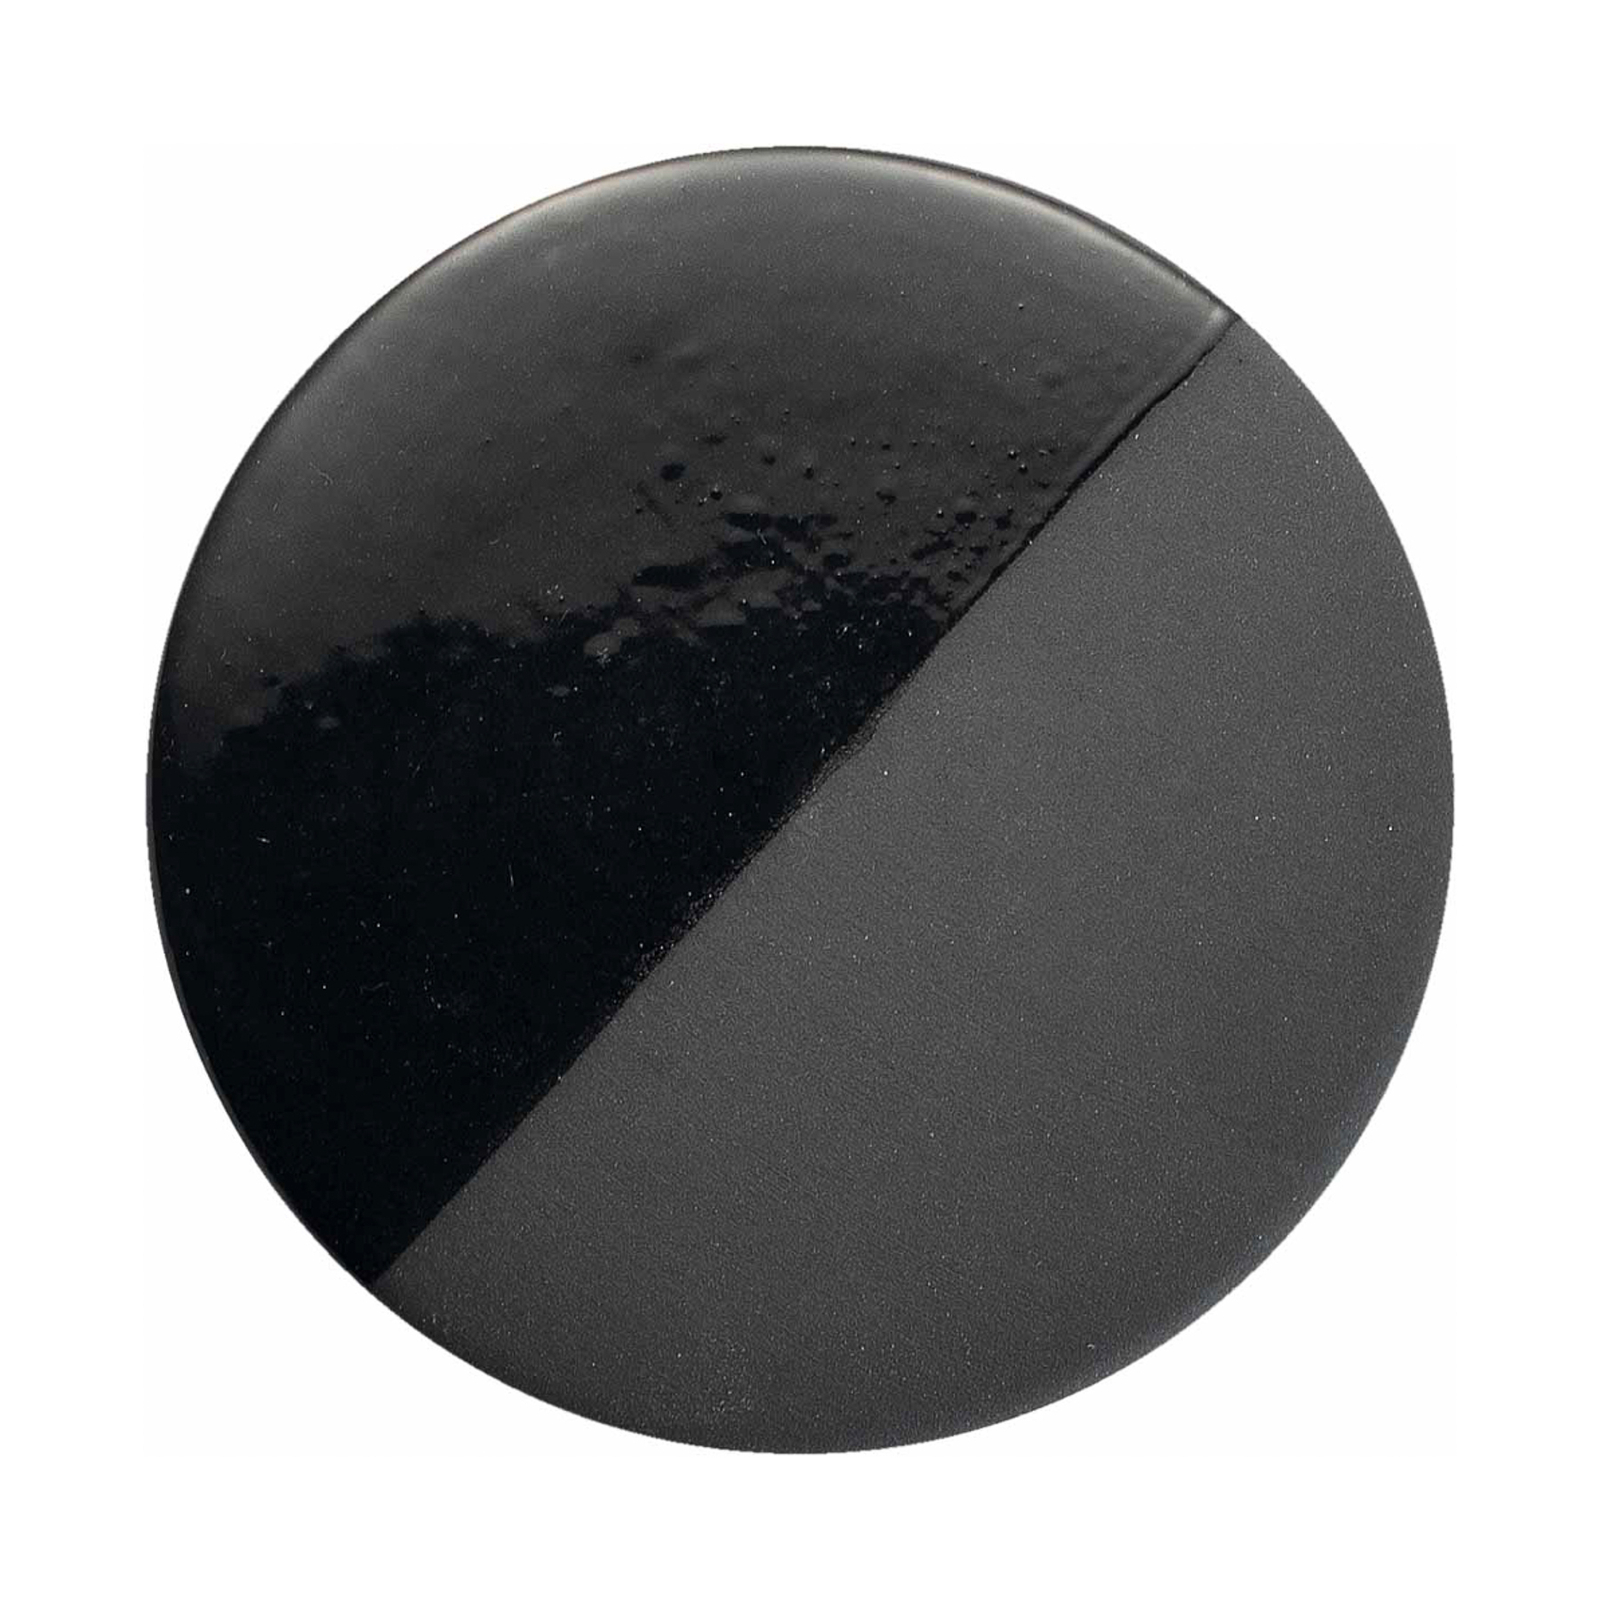 Caxixi pendant light made of ceramic, black